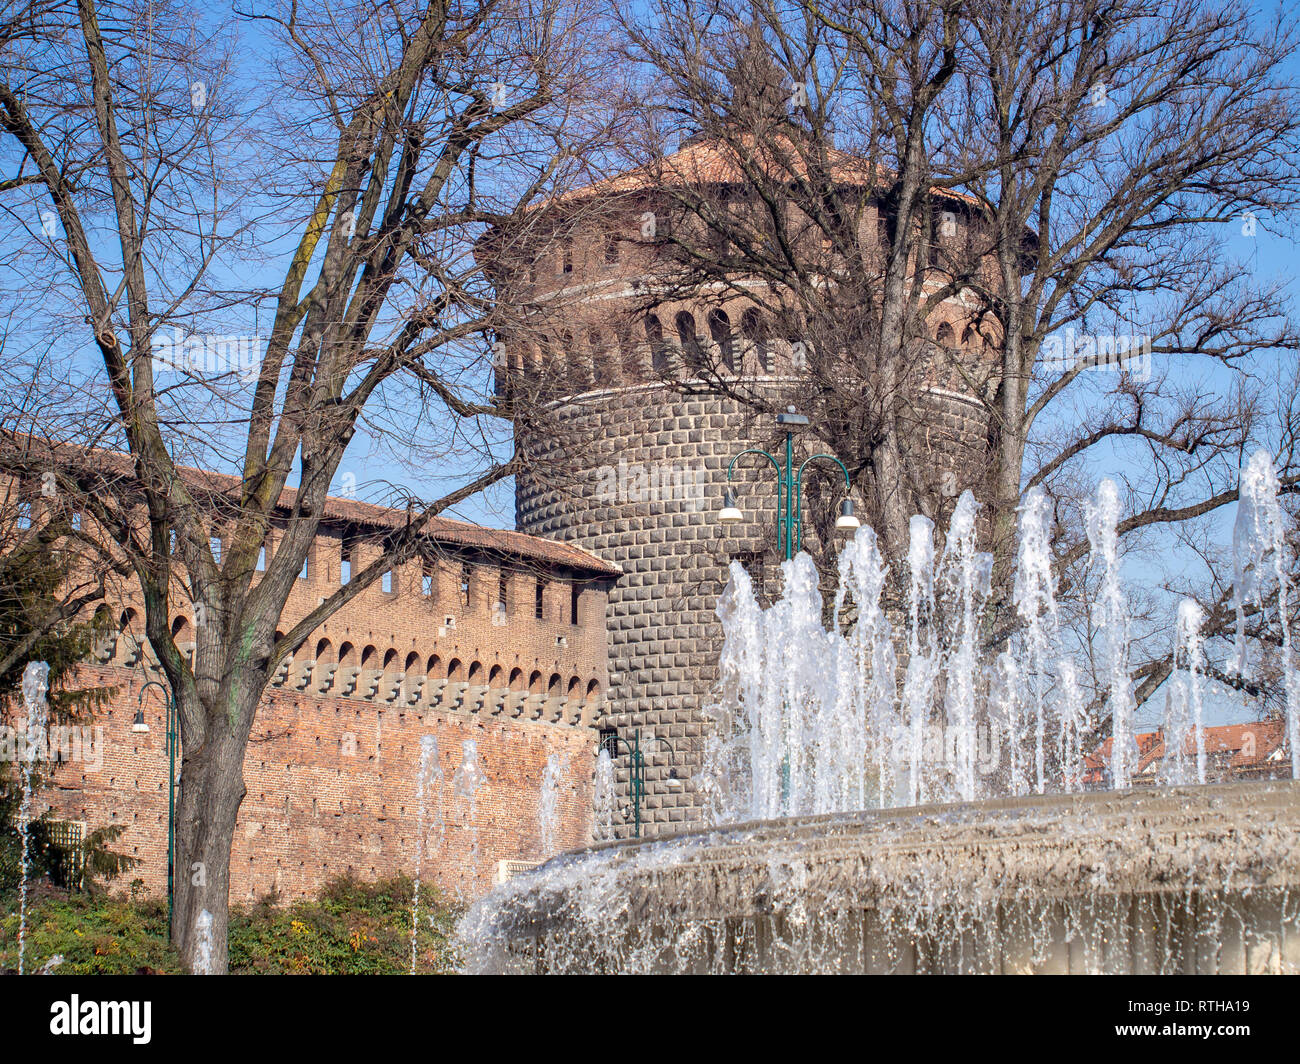 Tower of the Sforza Castle (Castello Sforzesco) through the jets of the fountain. Milan, Italy Stock Photo